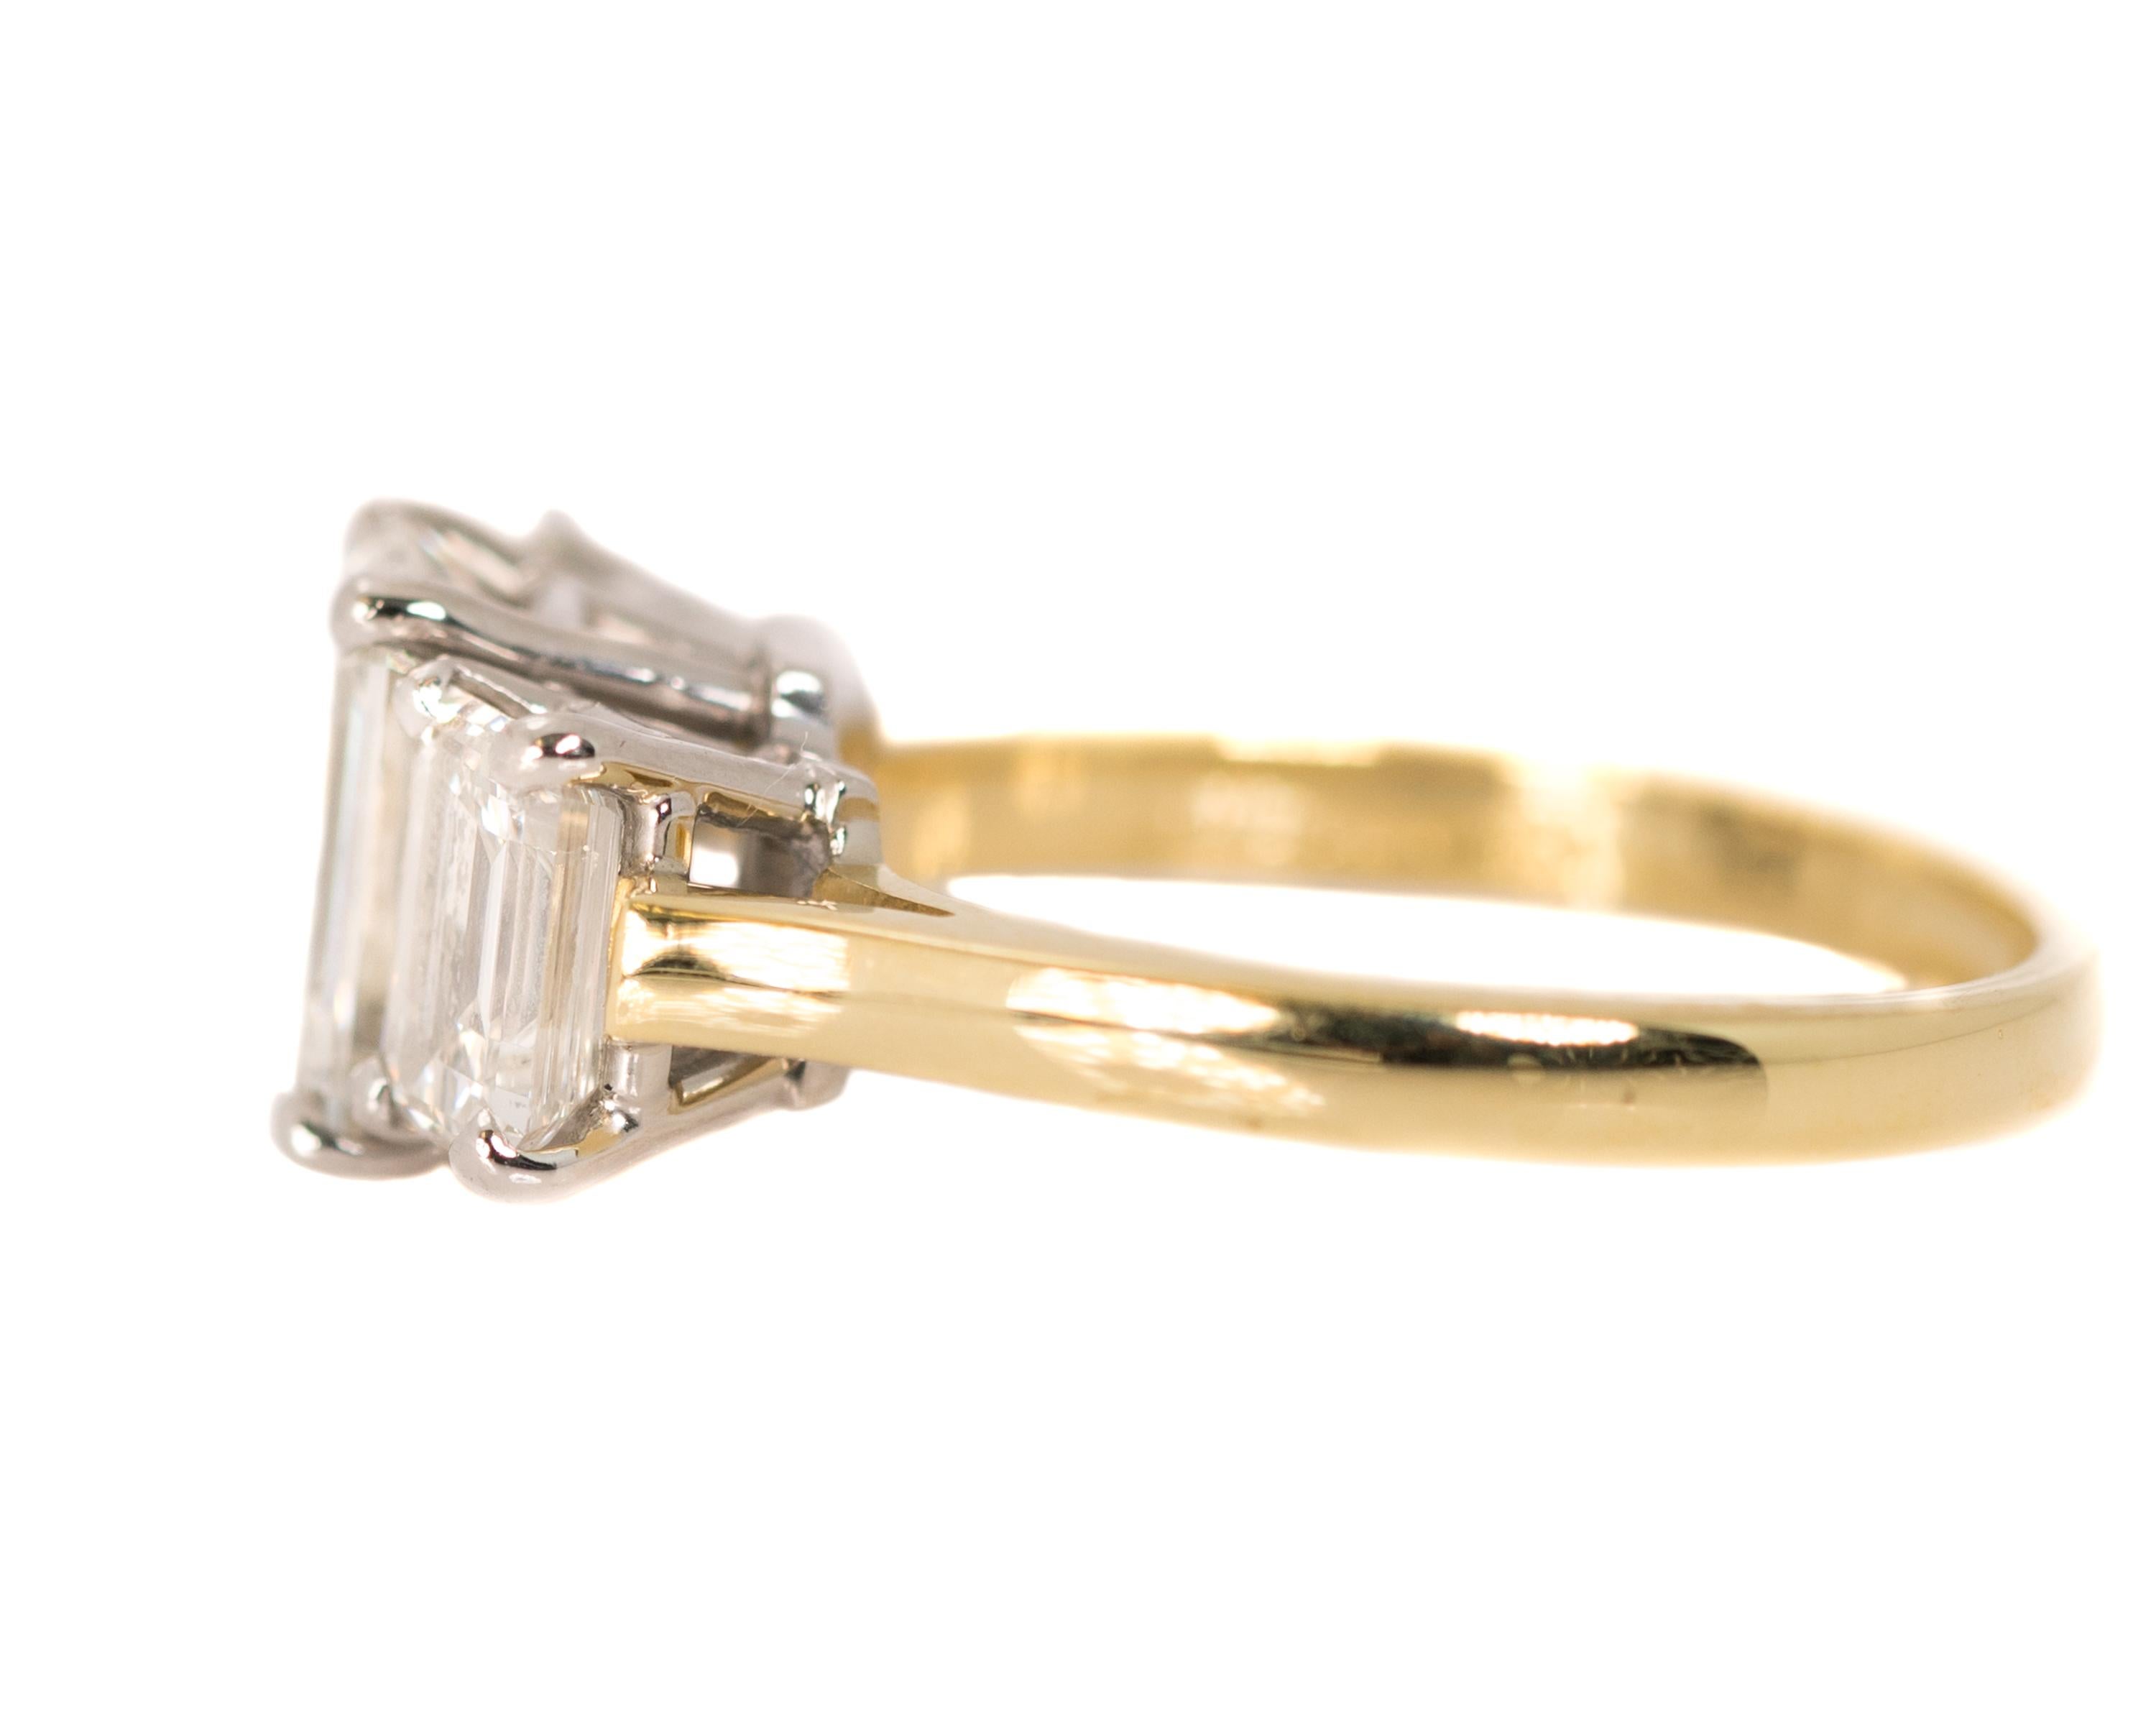 18 carat platinum diamond ring